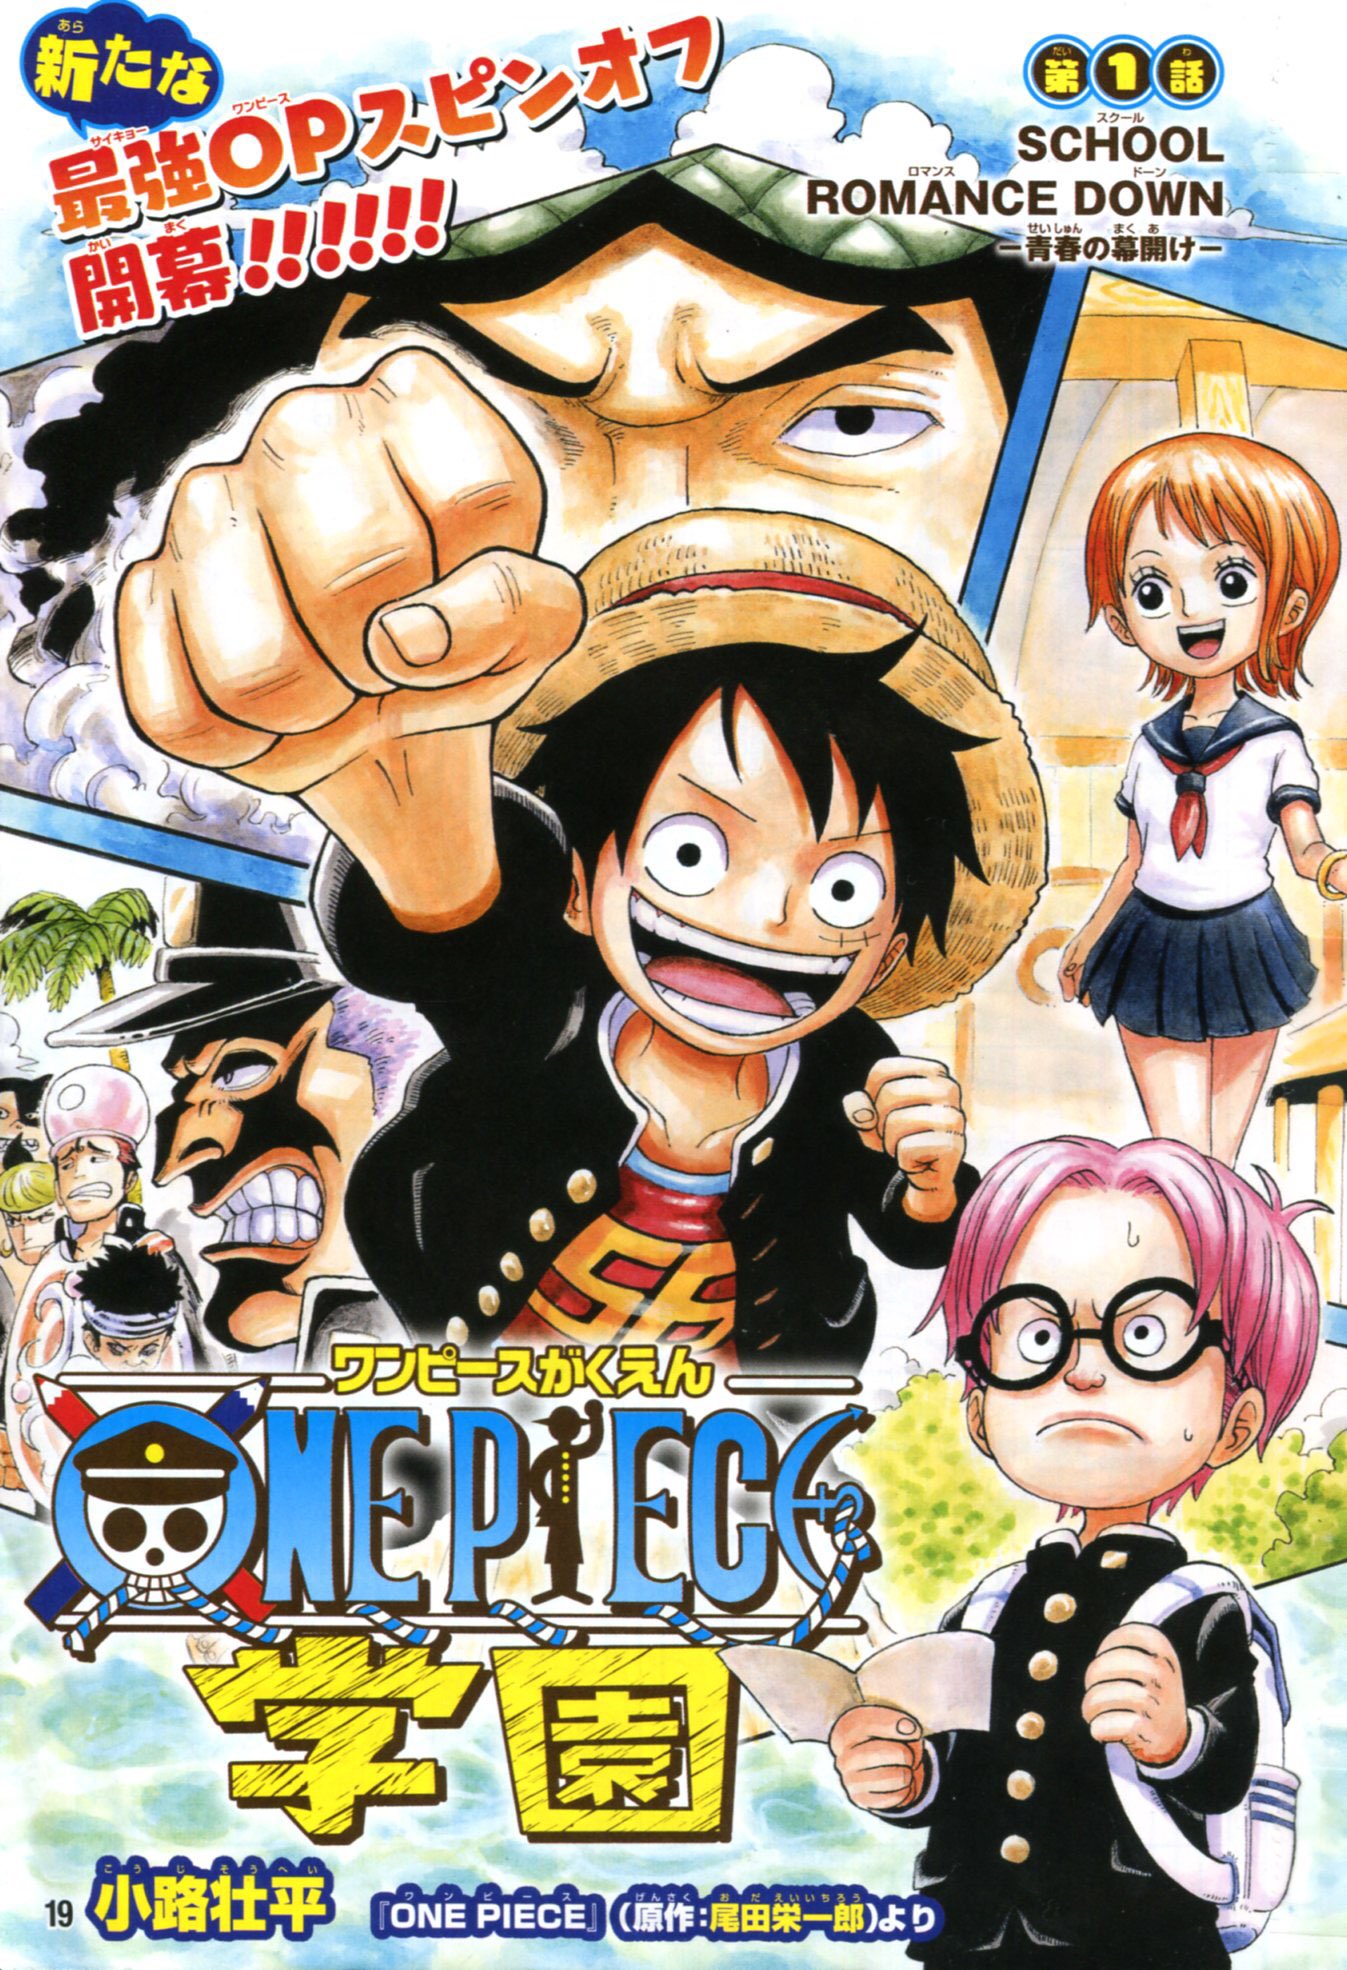 小路壮平 En Twitter 19 8 2発売 最強ジャンプ9月号より One Pieceスピンオフ漫画 One Piece学園 が新連載でスタートです よろしくお願いしまーす 劇場版 One Piece Stampede の超かっこいいでっかいポスターやシール Stampede巻 も付いてきます